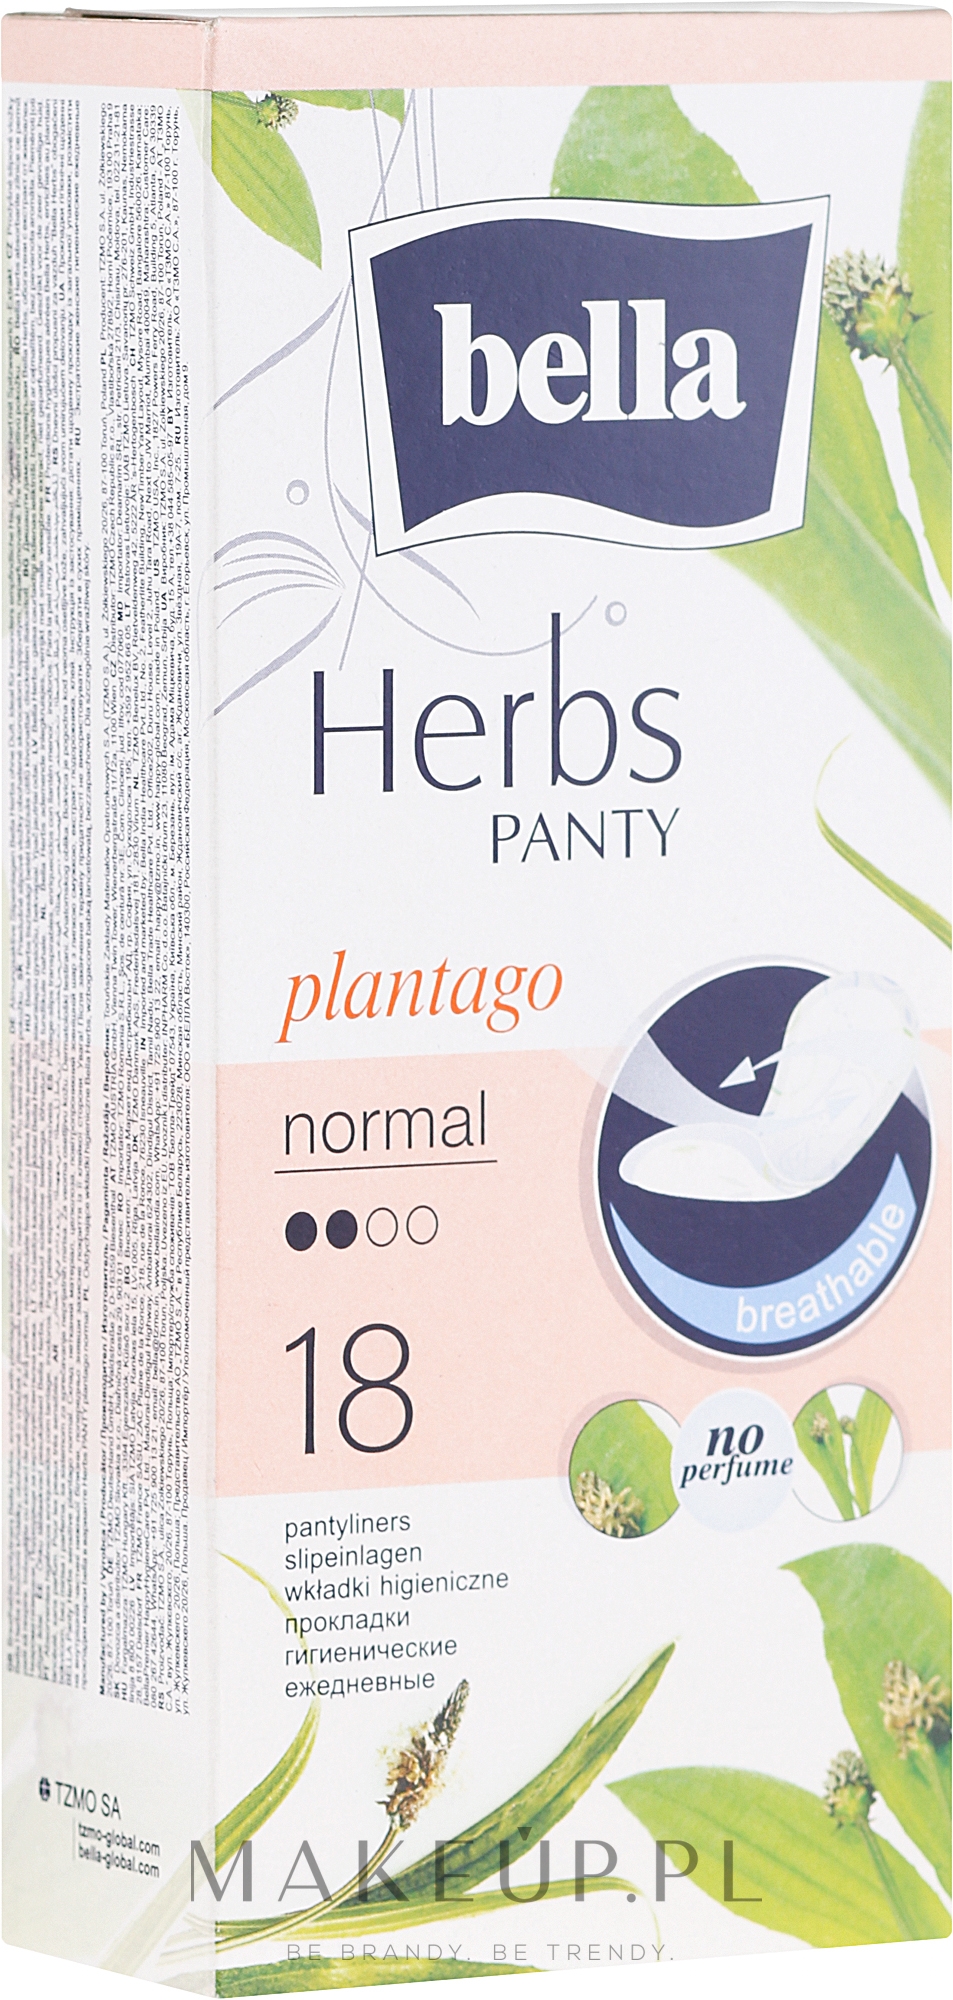 Wkładki higieniczne, 18 szt. - Bella Panty Herbs Plantago Normal — Zdjęcie 18 szt.